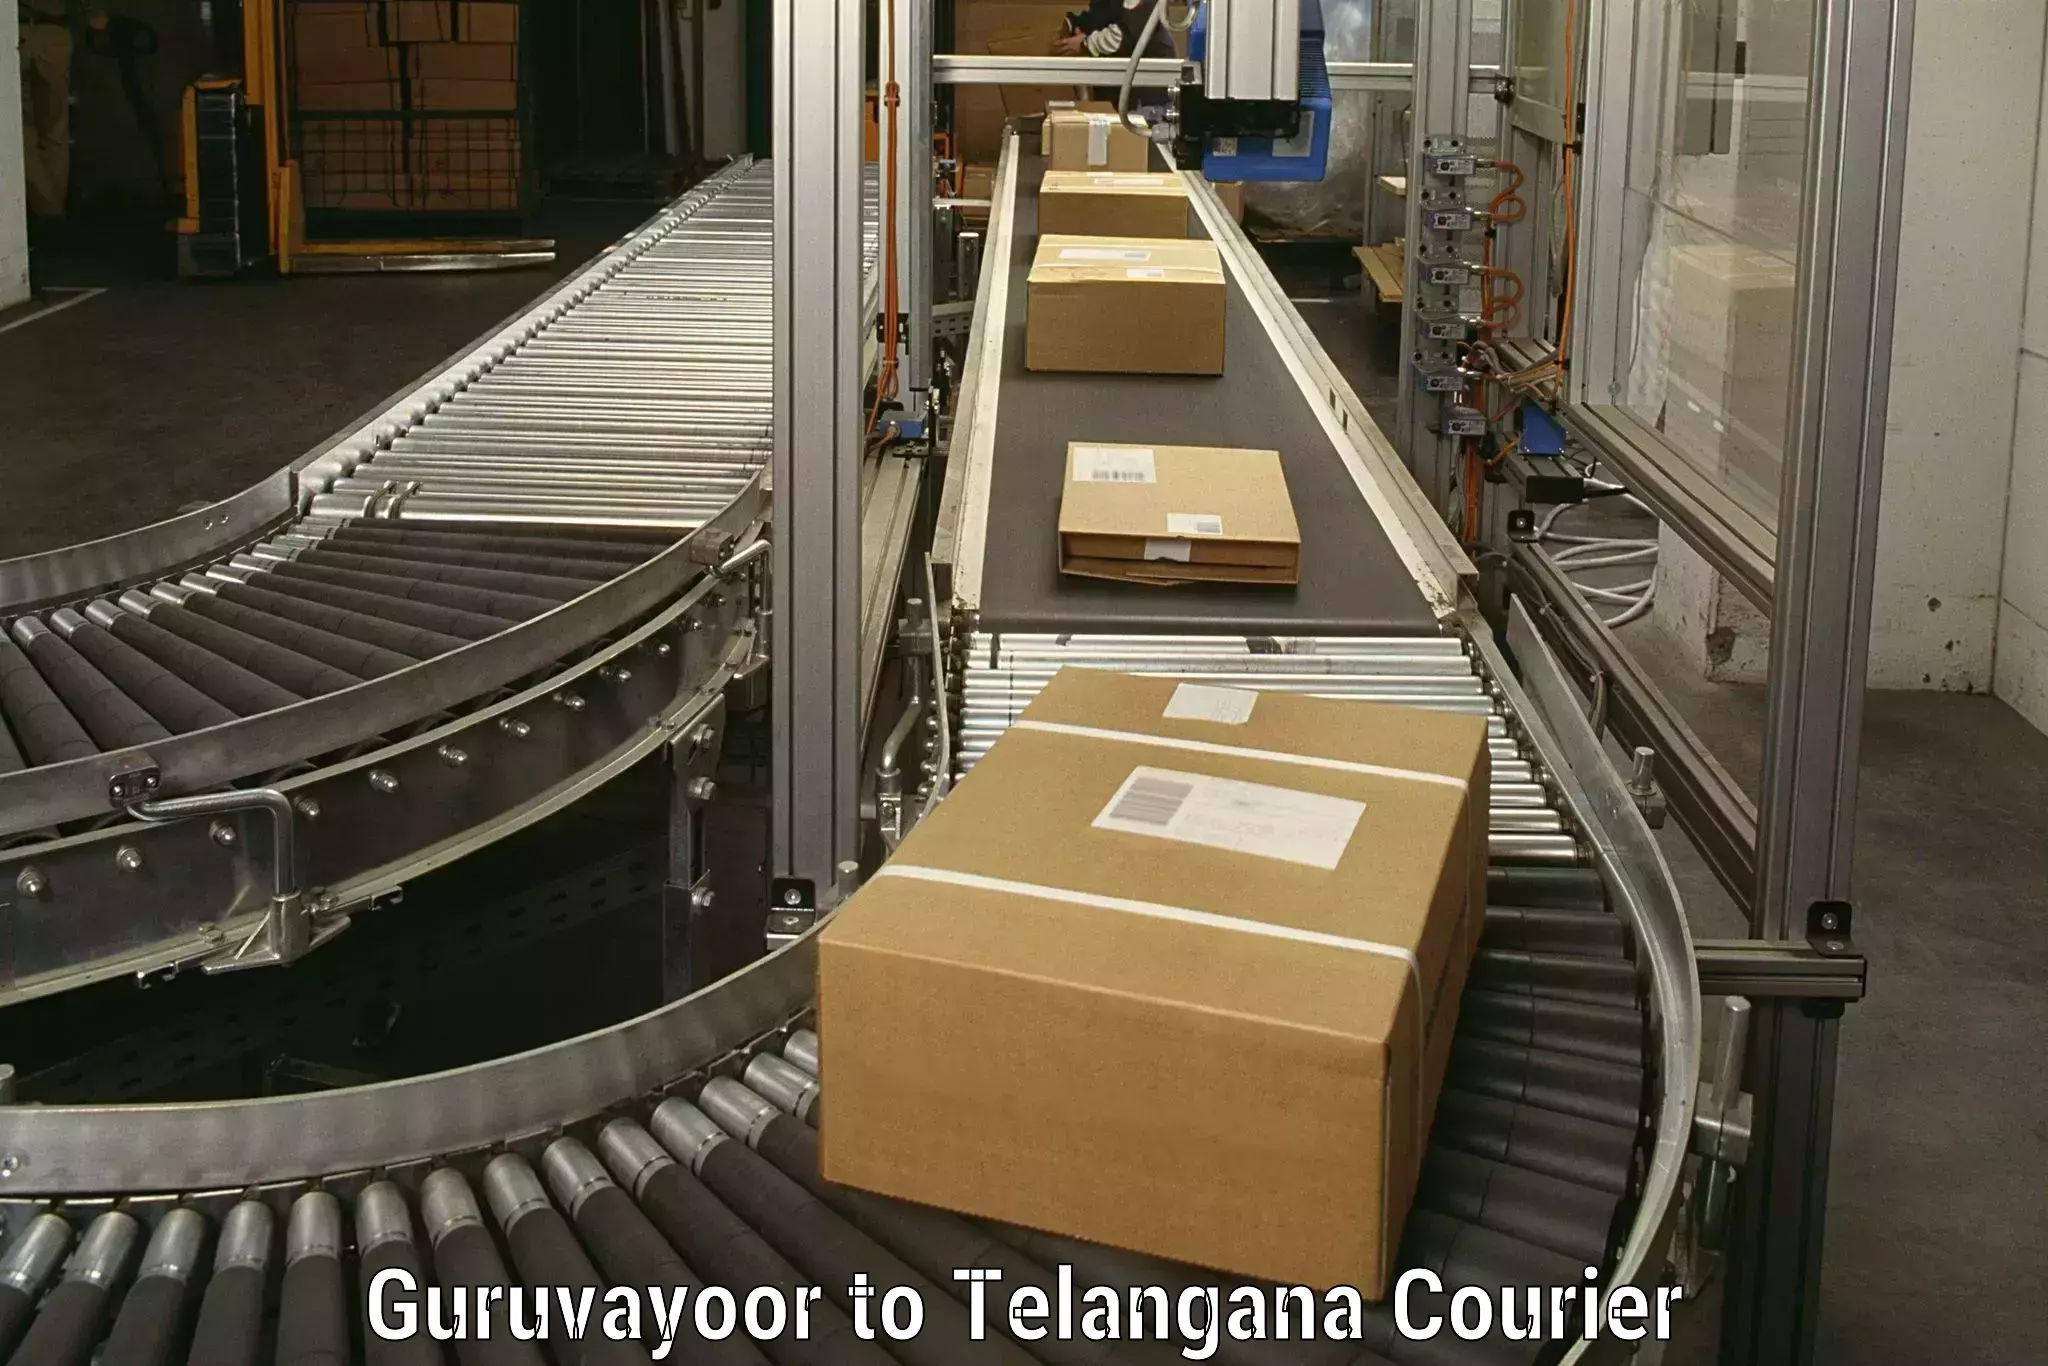 Household moving experts Guruvayoor to Mahabubnagar